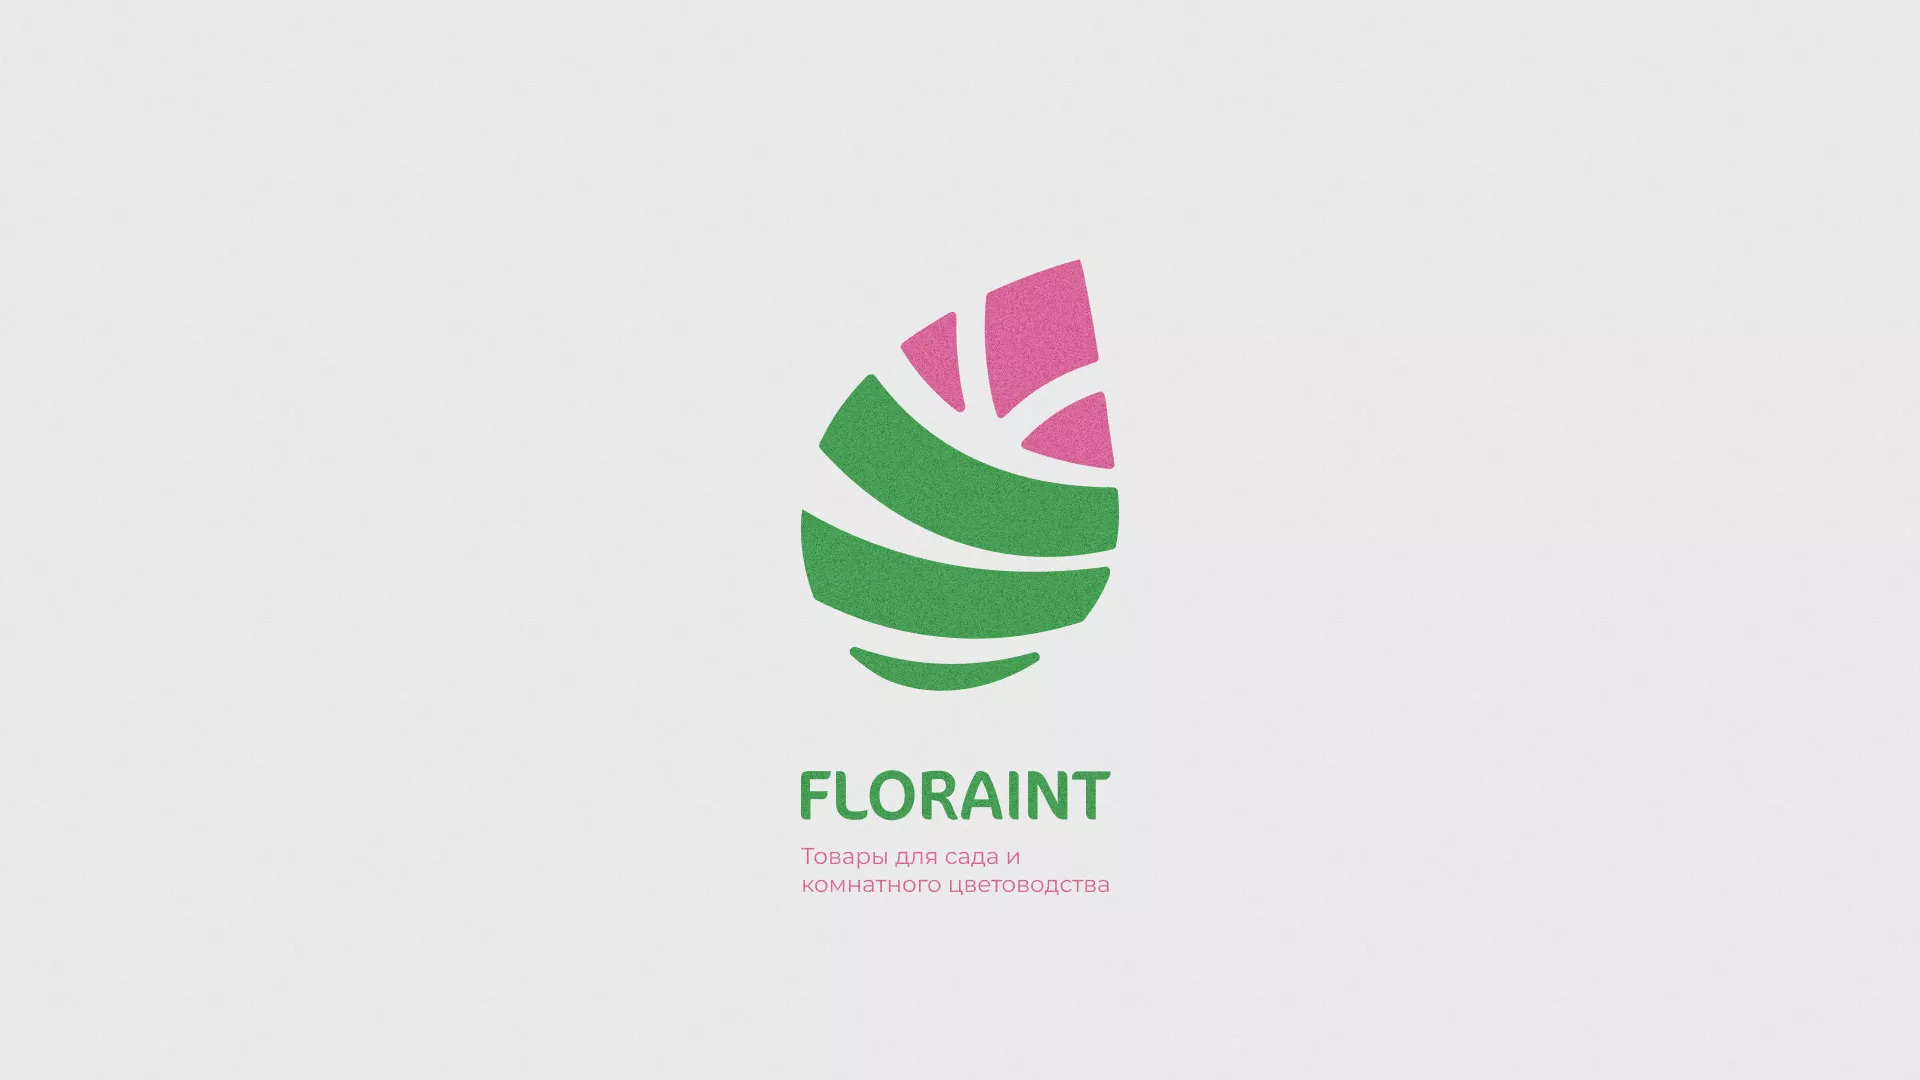 Разработка оформления профиля Instagram для магазина «Floraint» в Устюжне